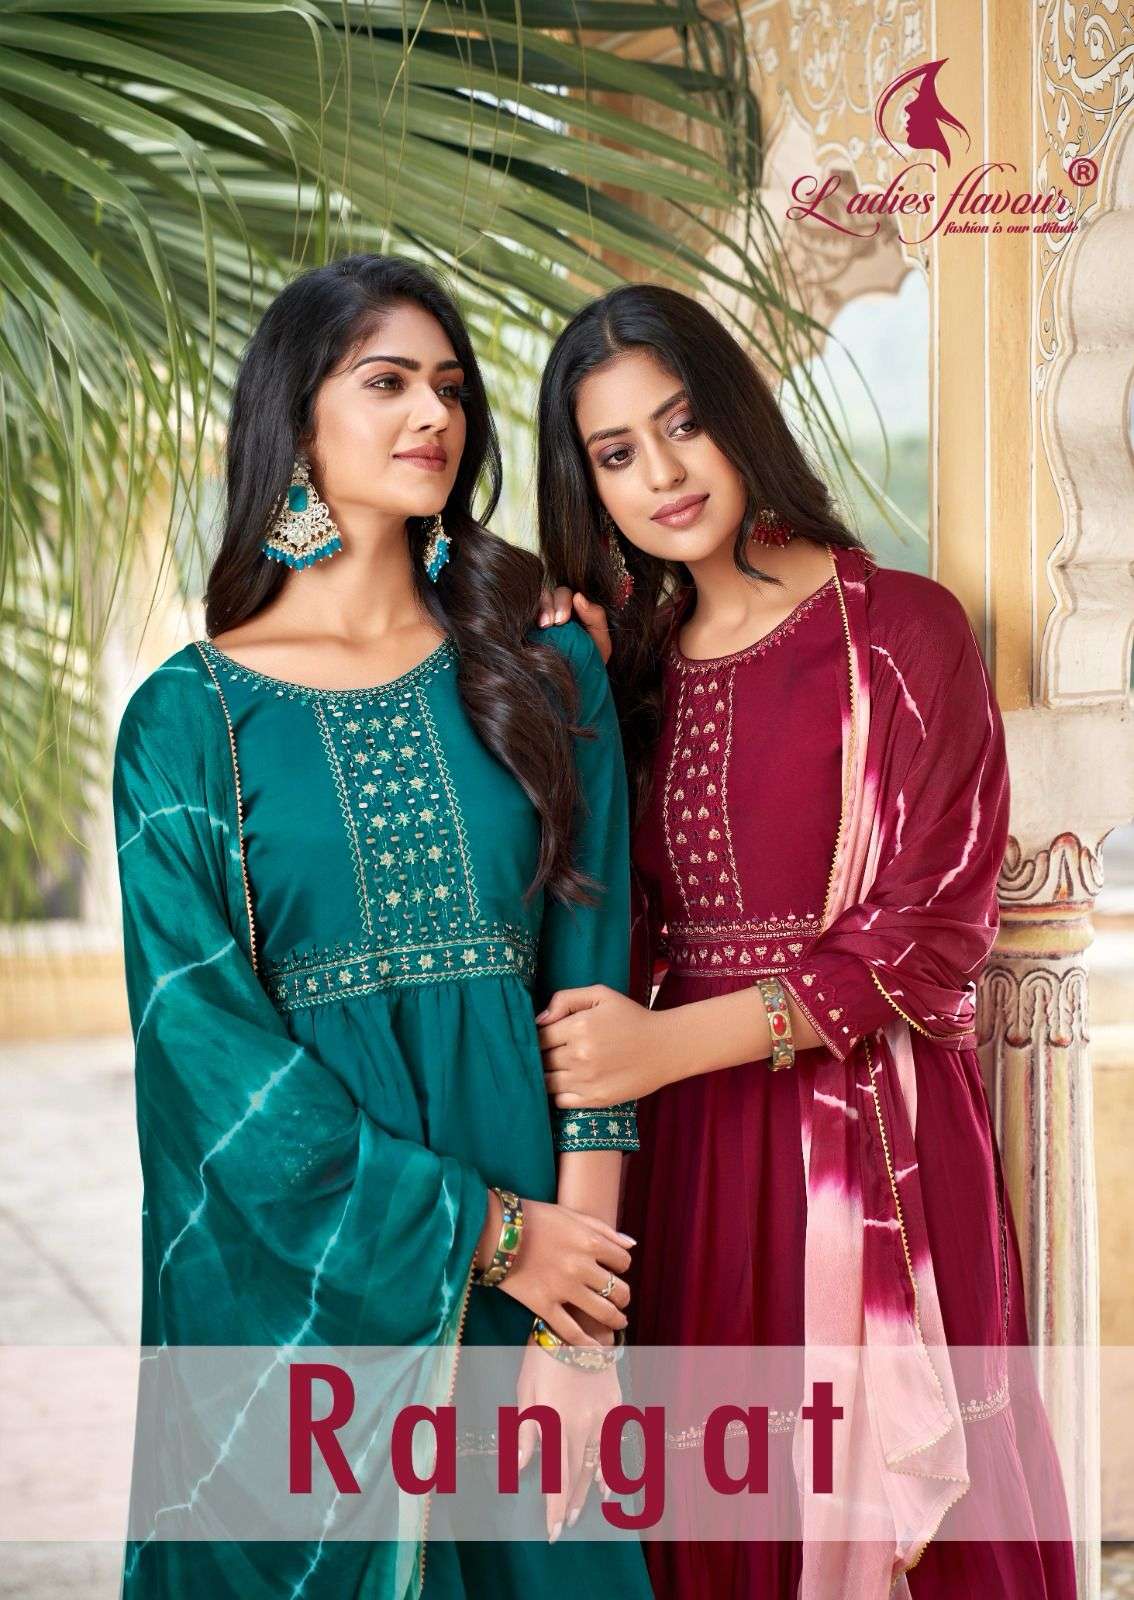 https://kapdavilla.com/images/product/sub_images/2023/12/ladies-flavour-rangat-stylish-kurti-pant-dupatta-pair-festive-collection-0-2023-12-23_13_47_56.jpeg